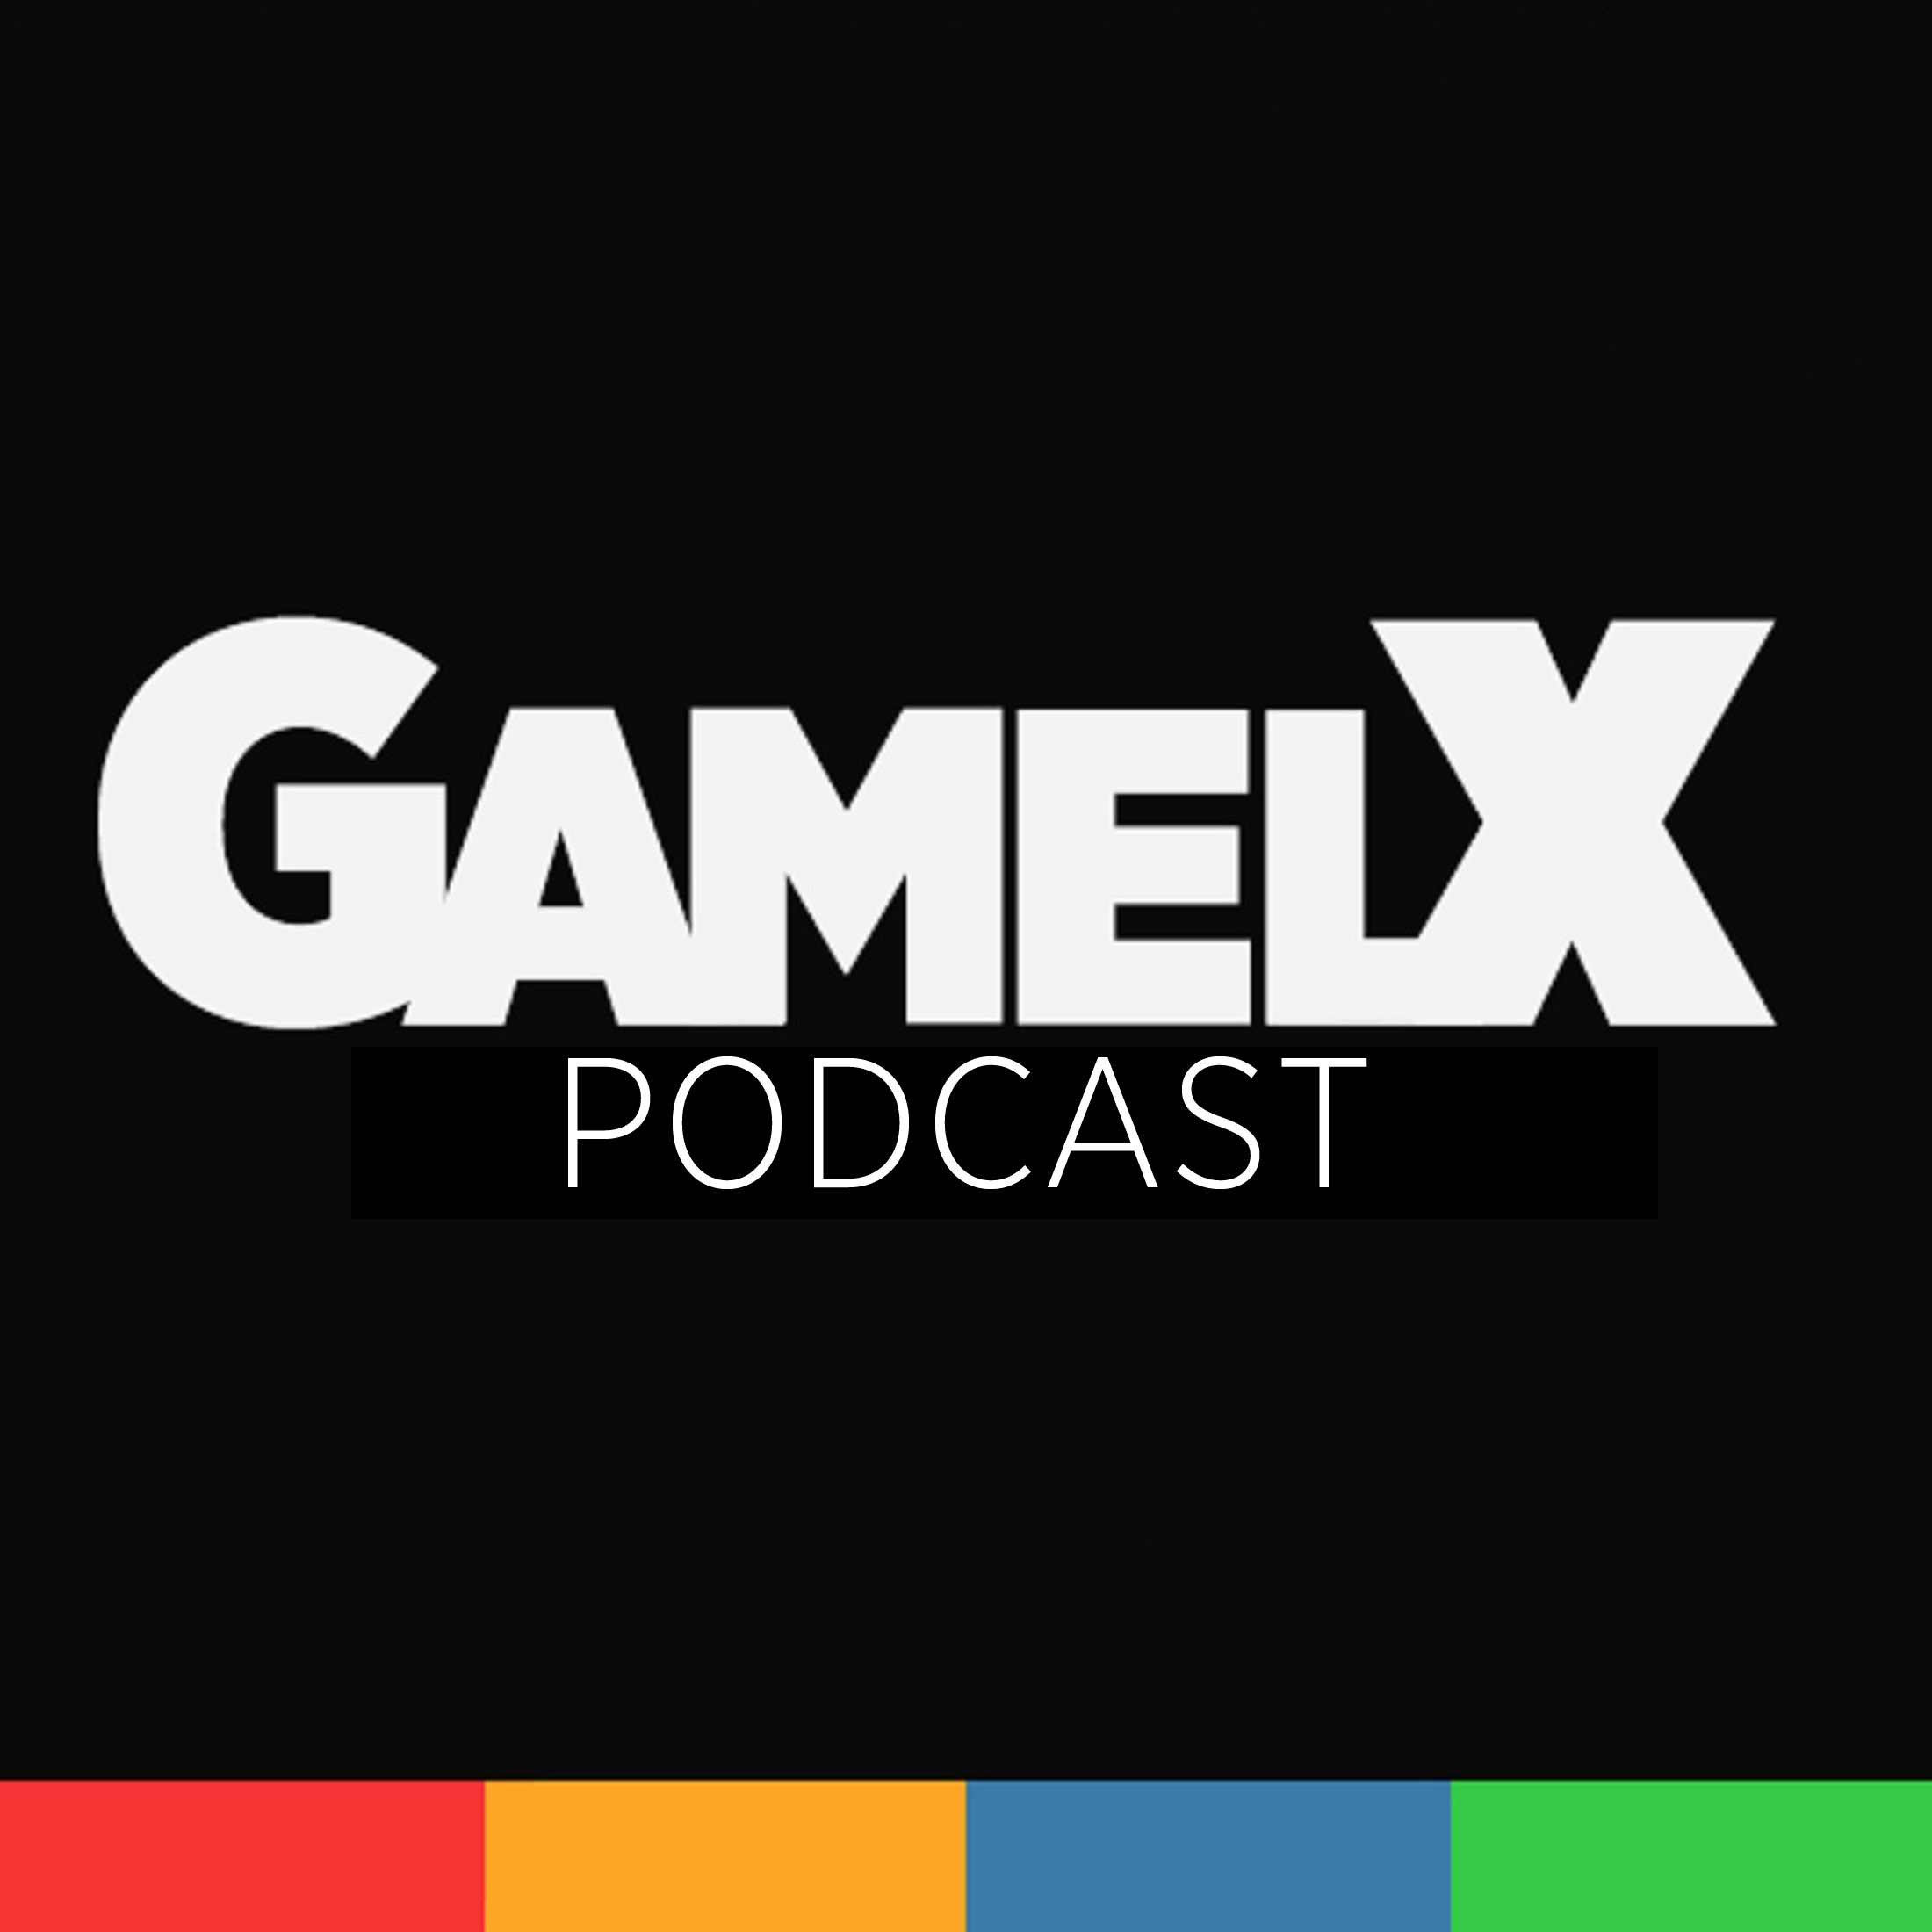 Podcast GameLX | 7×06 – Experiencias terrorificas en los videojuegos